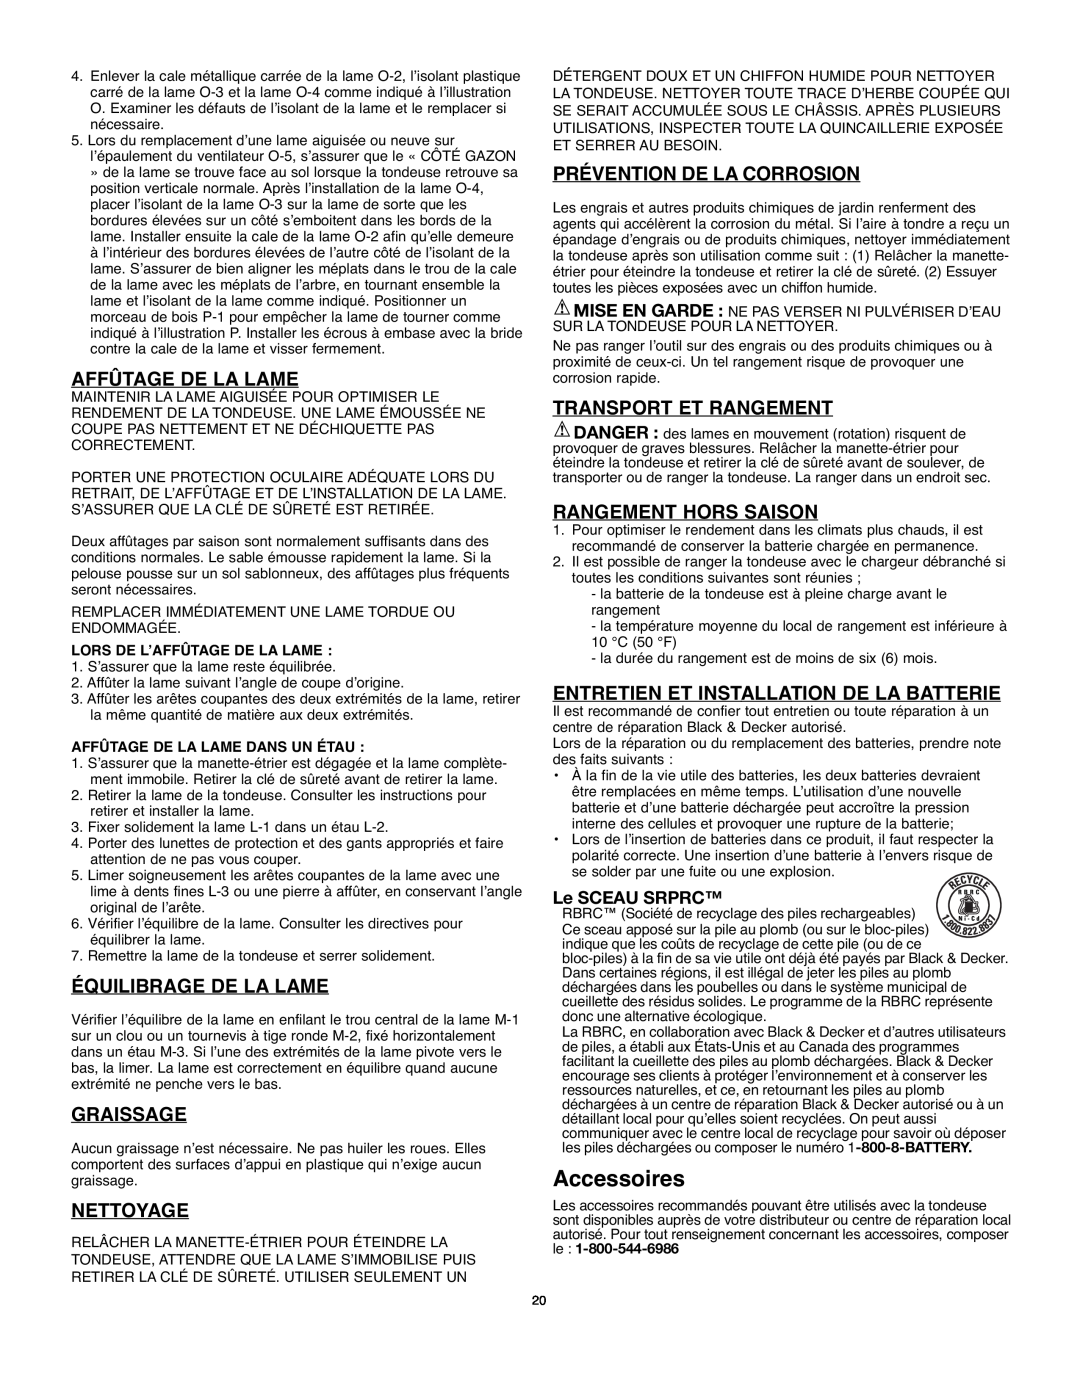 Black & Decker 90541667 Accessoires, Affûtage De La Lame, Équilibrage De La Lame, Graissage, Nettoyage, Le SCEAU SRPRC 